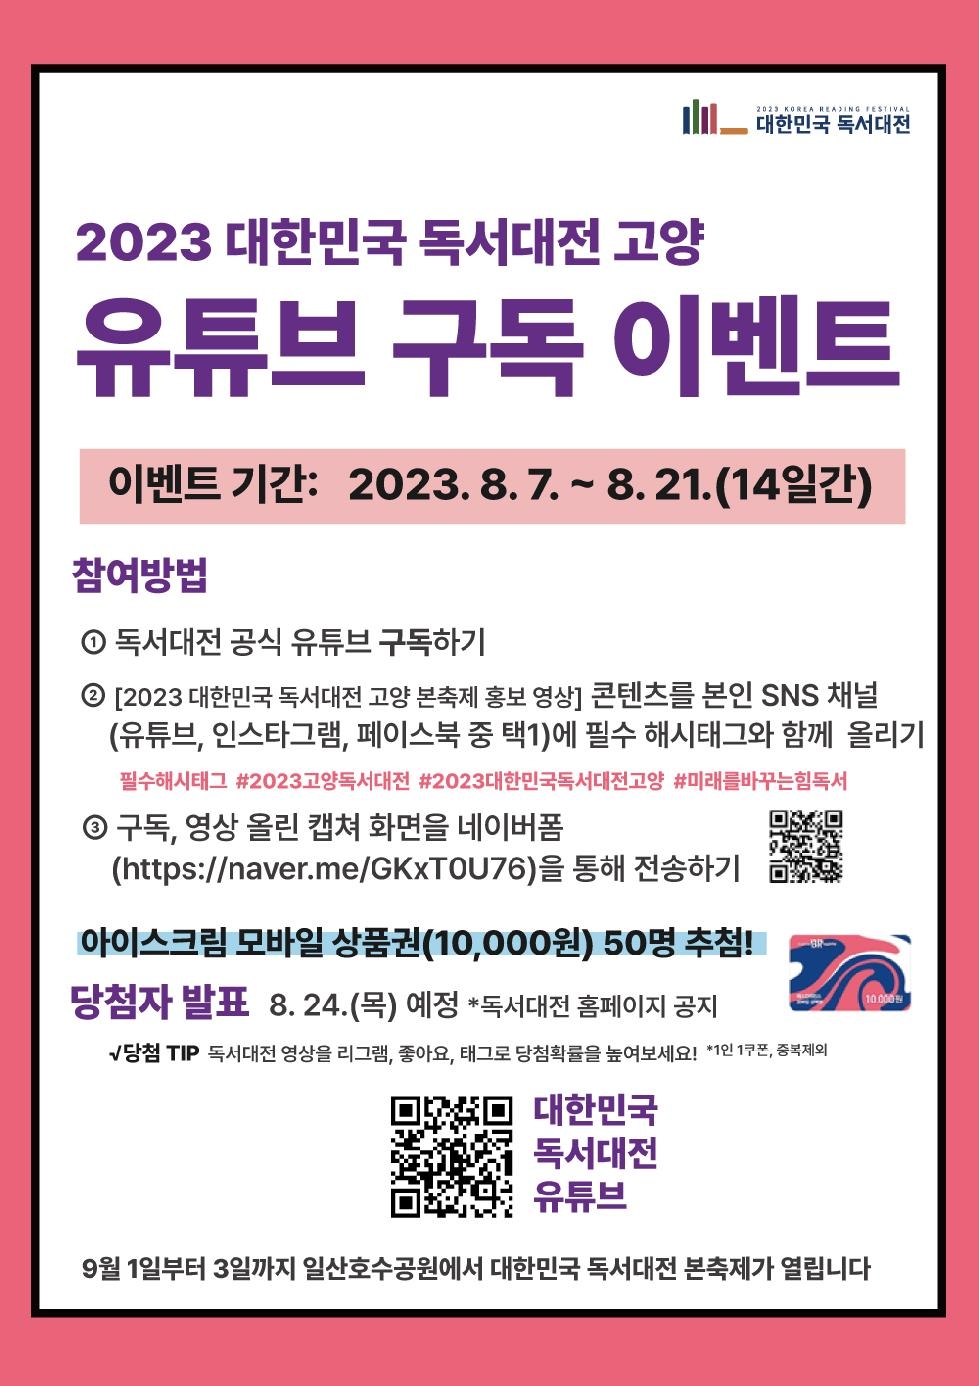 ‘2023 대한민국 독서대전 고양’ 유튜브 구독 이벤트 실시